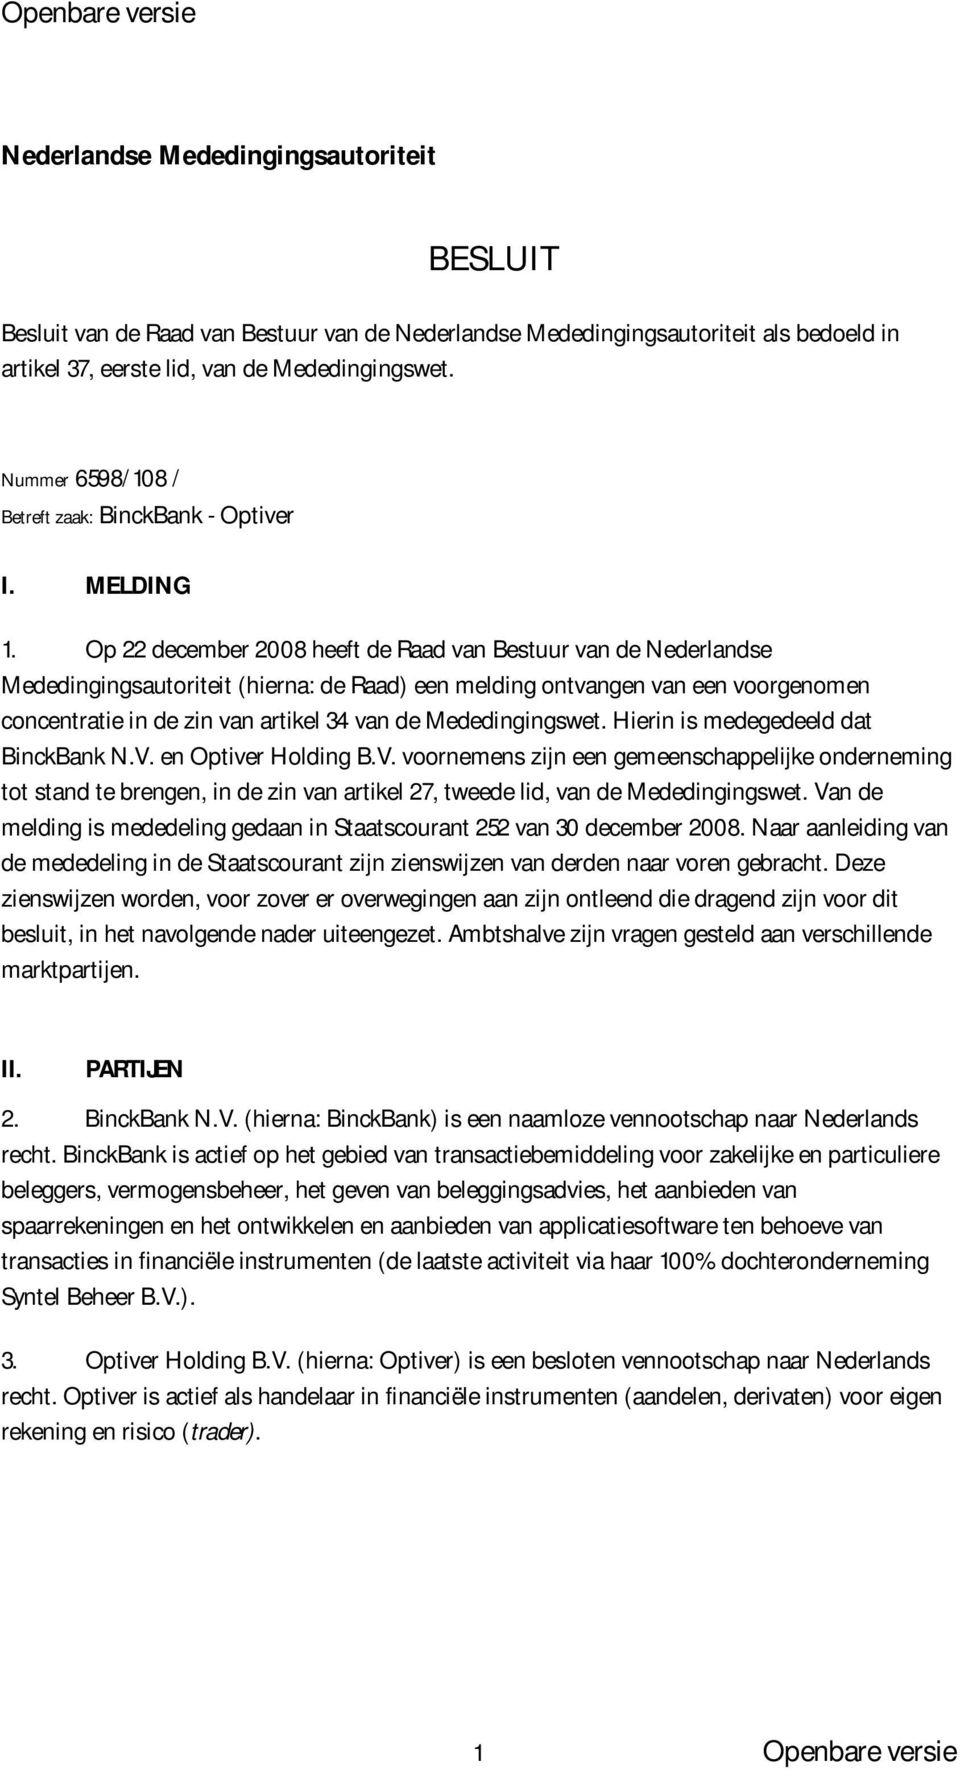 Op 22 december 2008 heeft de Raad van Bestuur van de Nederlandse Mededingingsautoriteit (hierna: de Raad) een melding ontvangen van een voorgenomen concentratie in de zin van artikel 34 van de